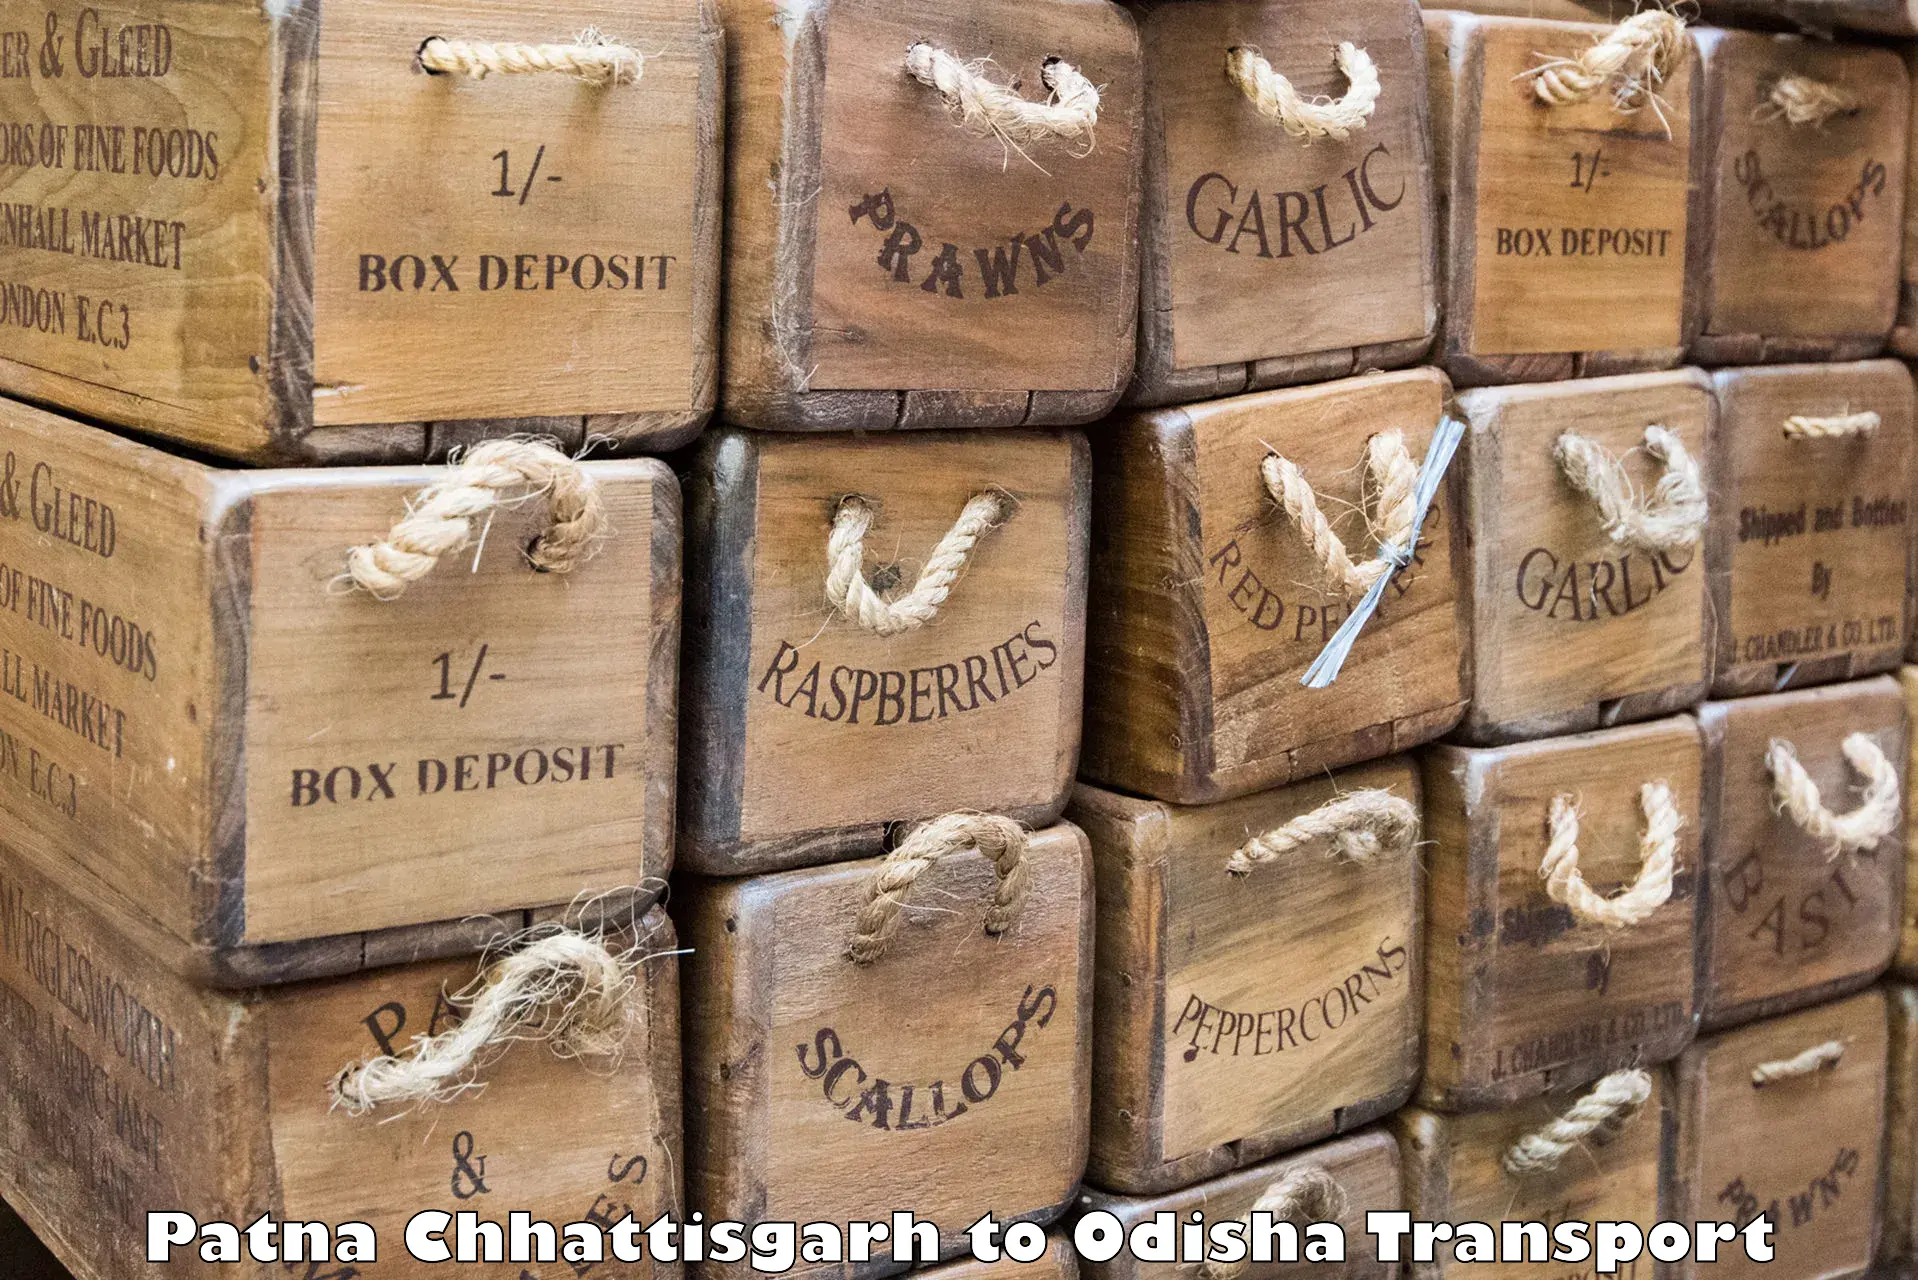 Commercial transport service Patna Chhattisgarh to Kalimela